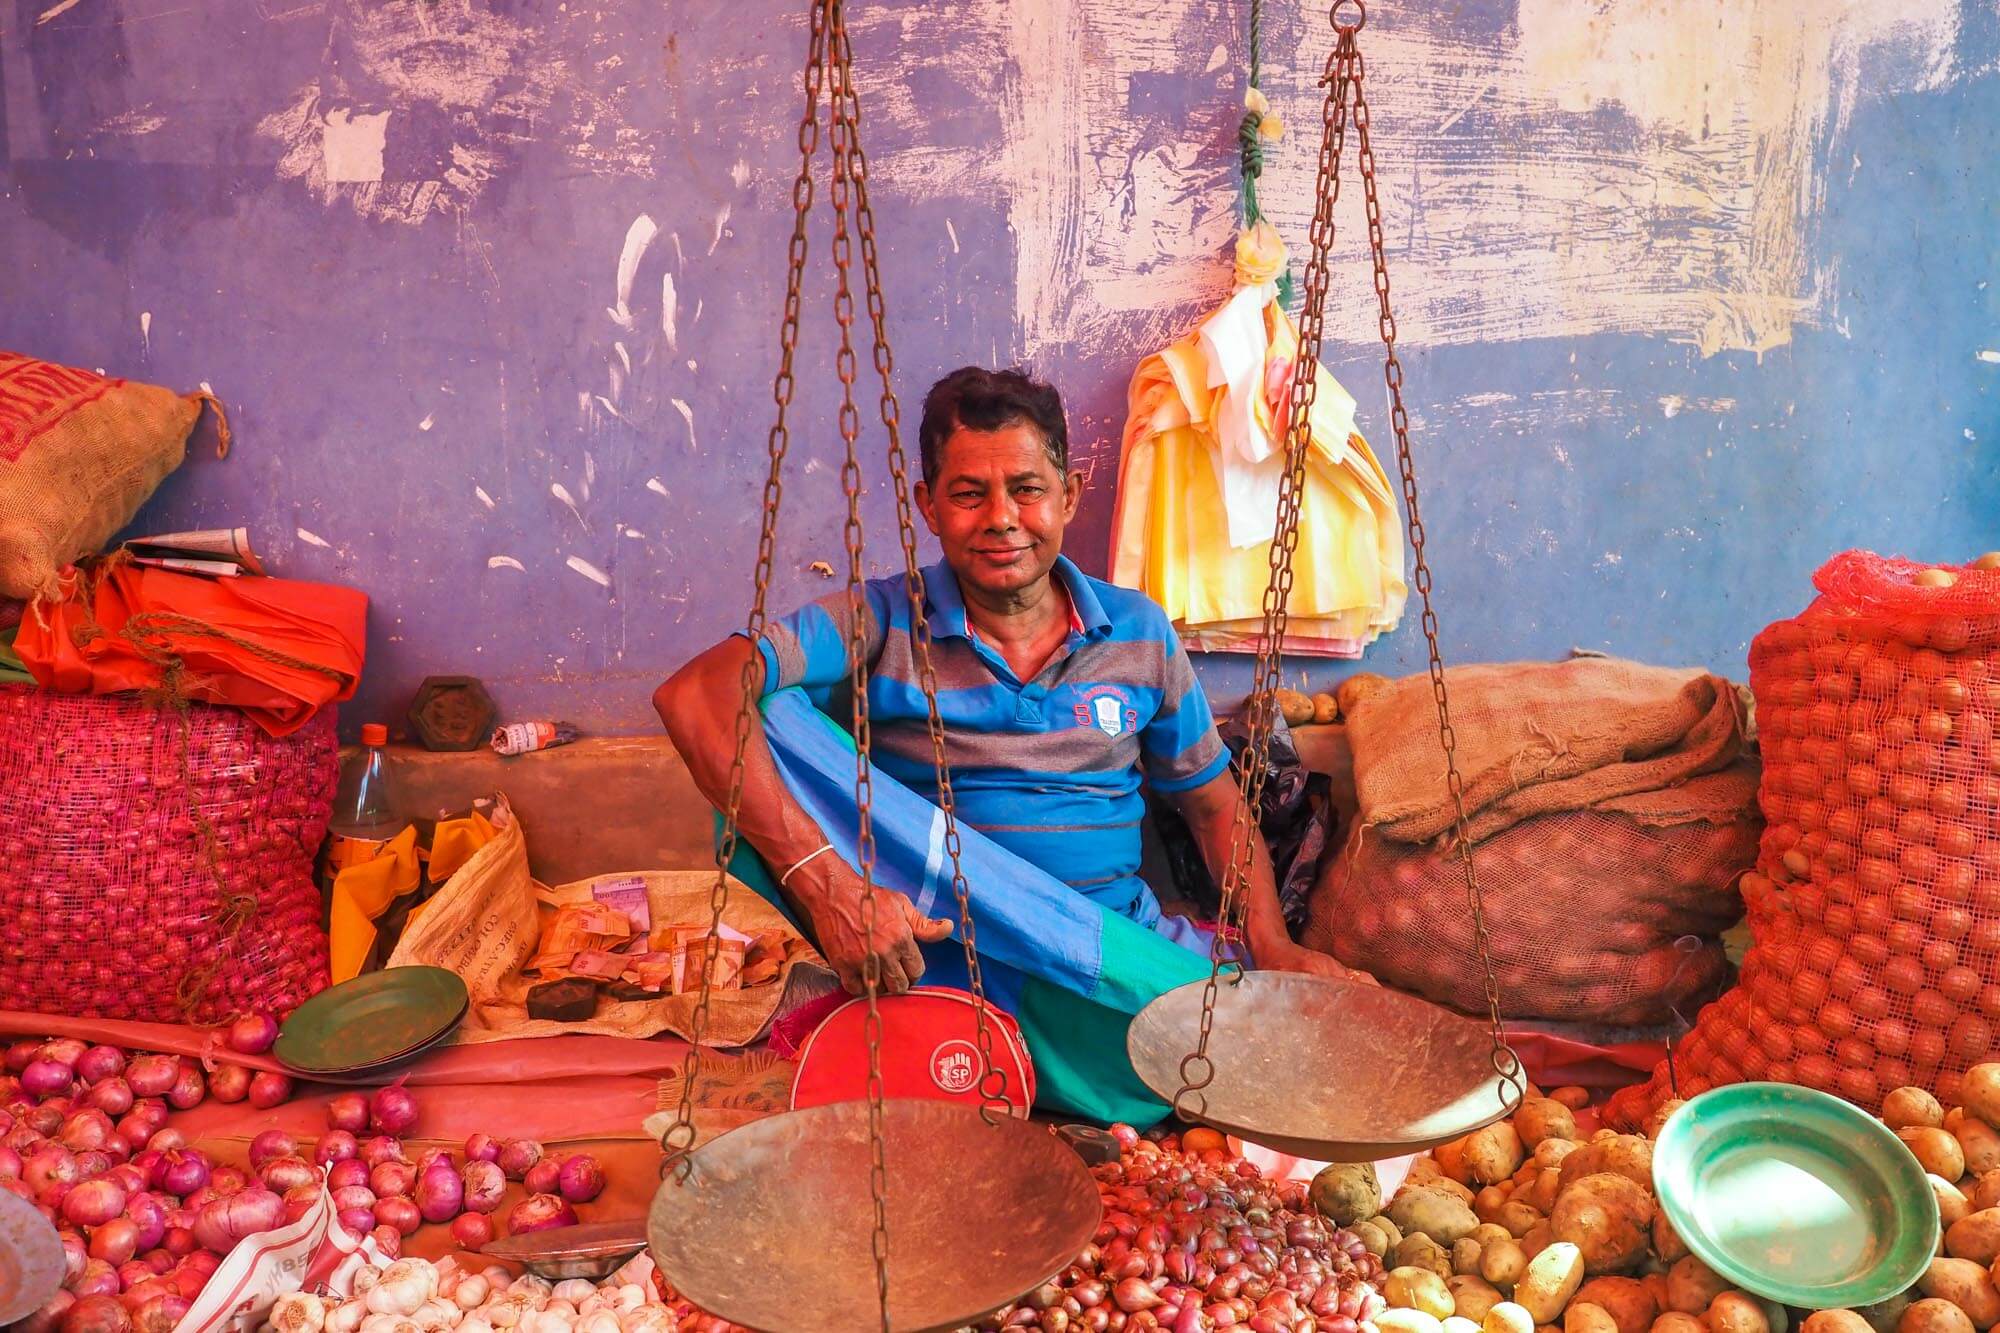 Vegetable Market, Sri Lanka - Travel photographer